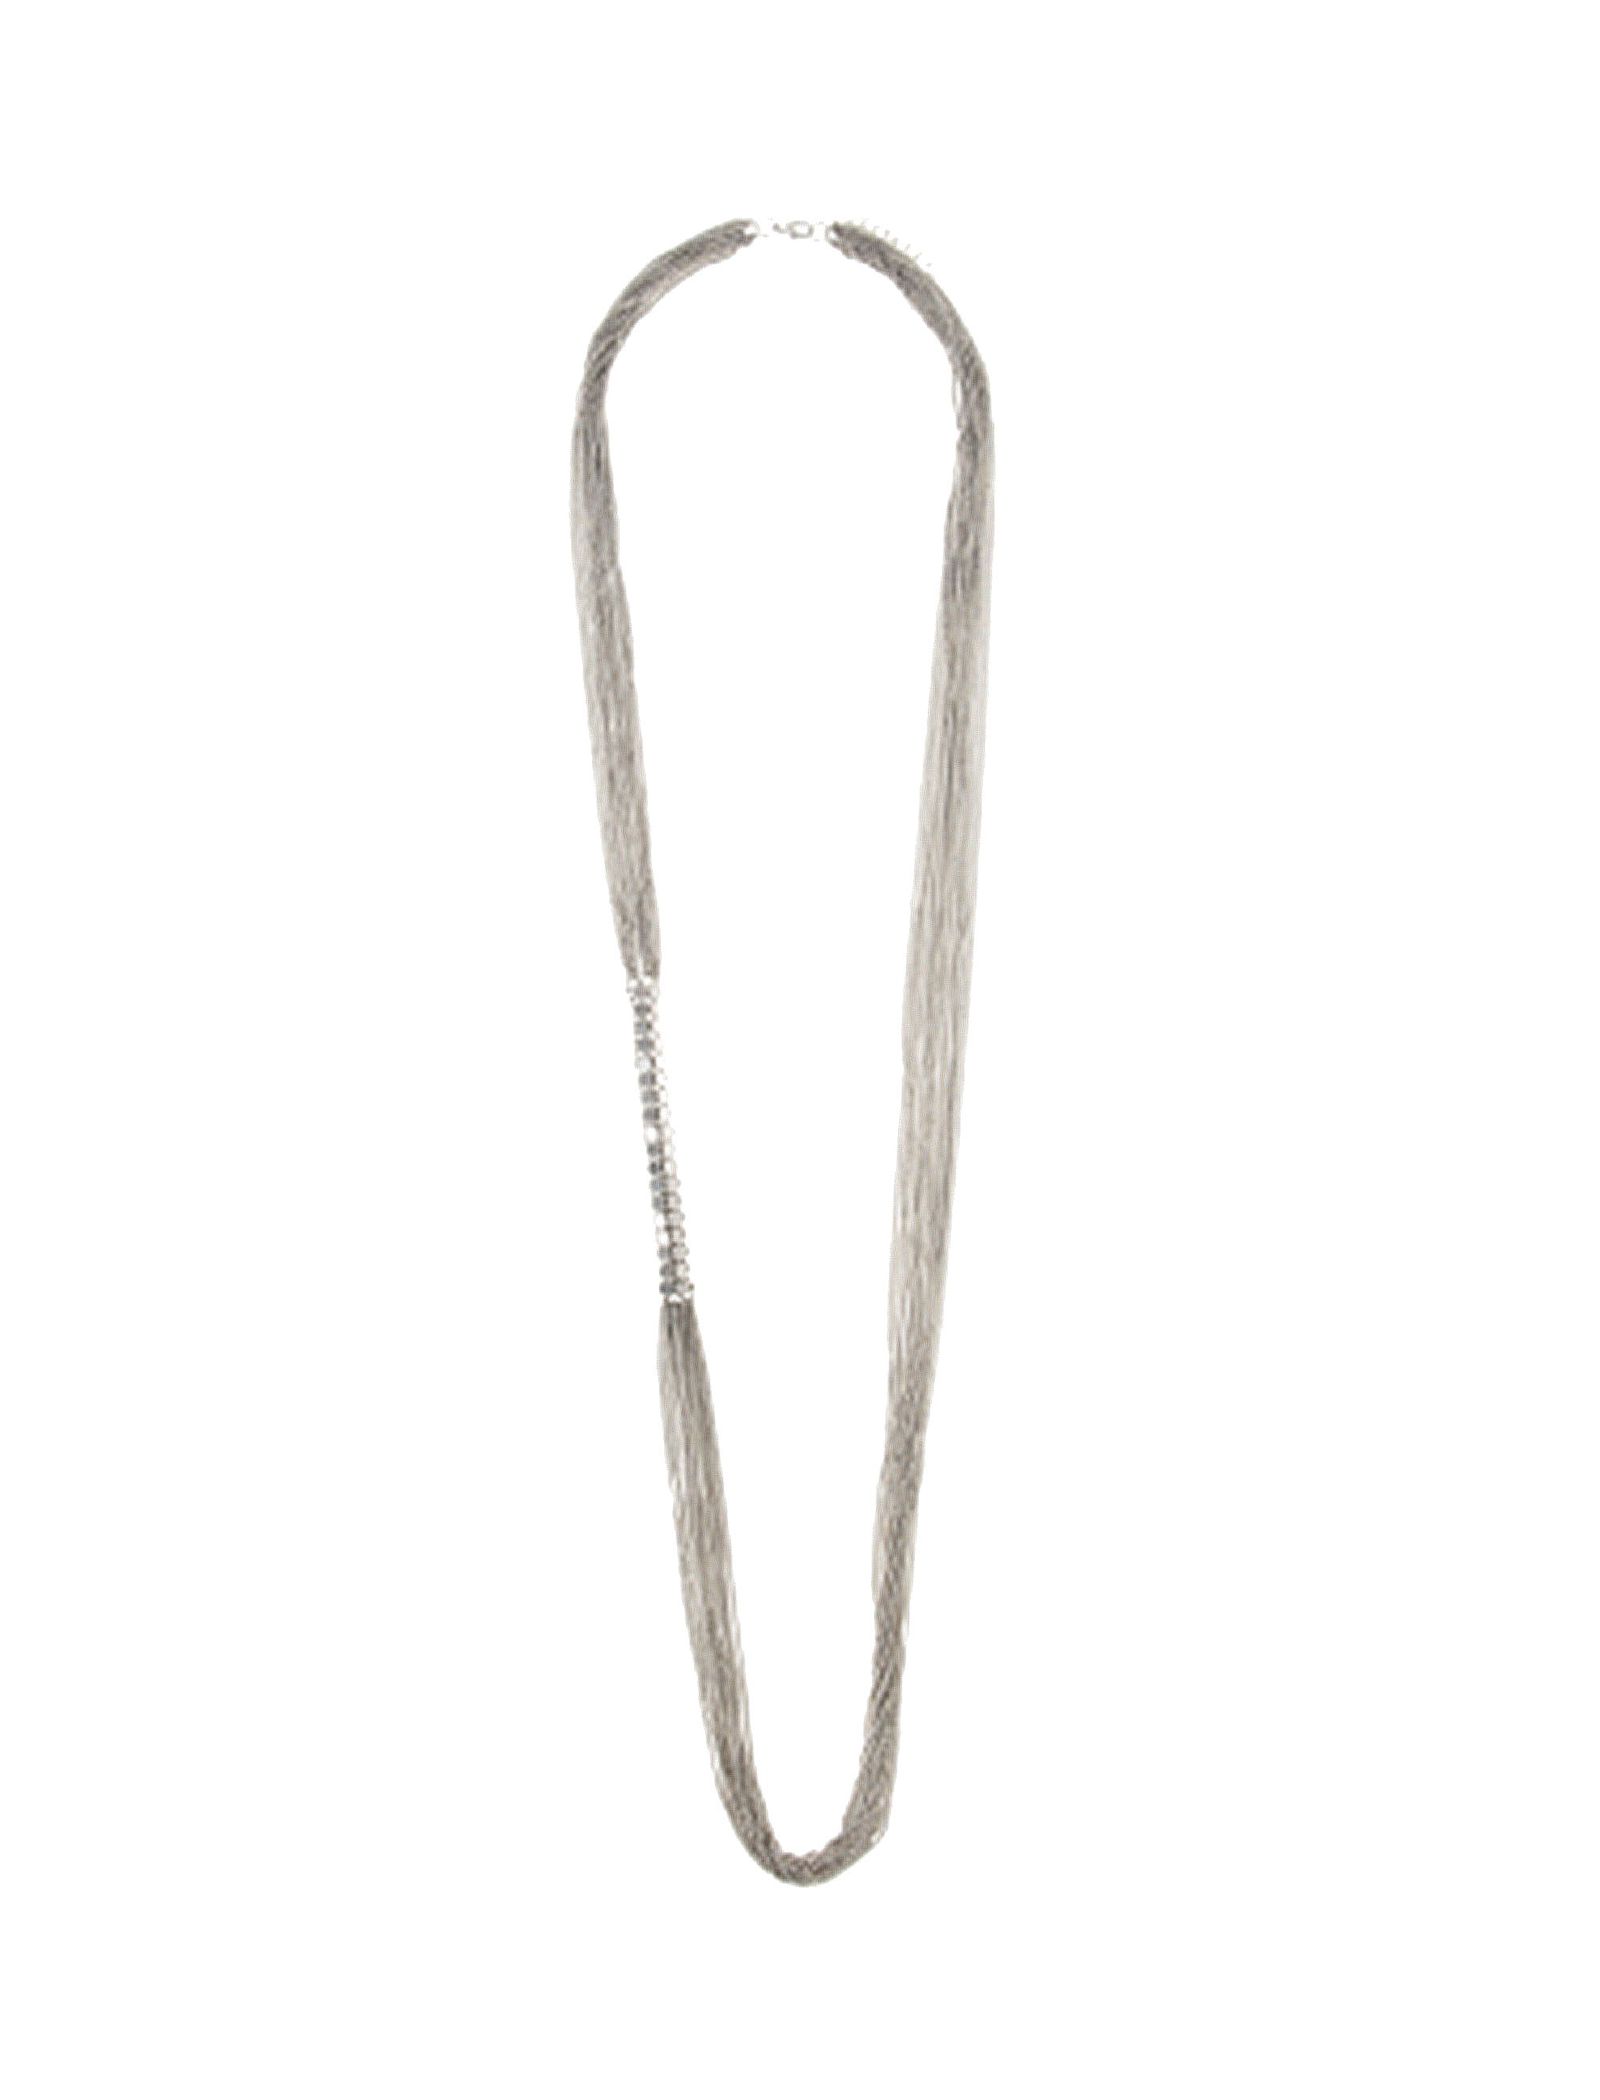 گردنبند زنجیری زنانه - پارفوا - نقره اي - 1